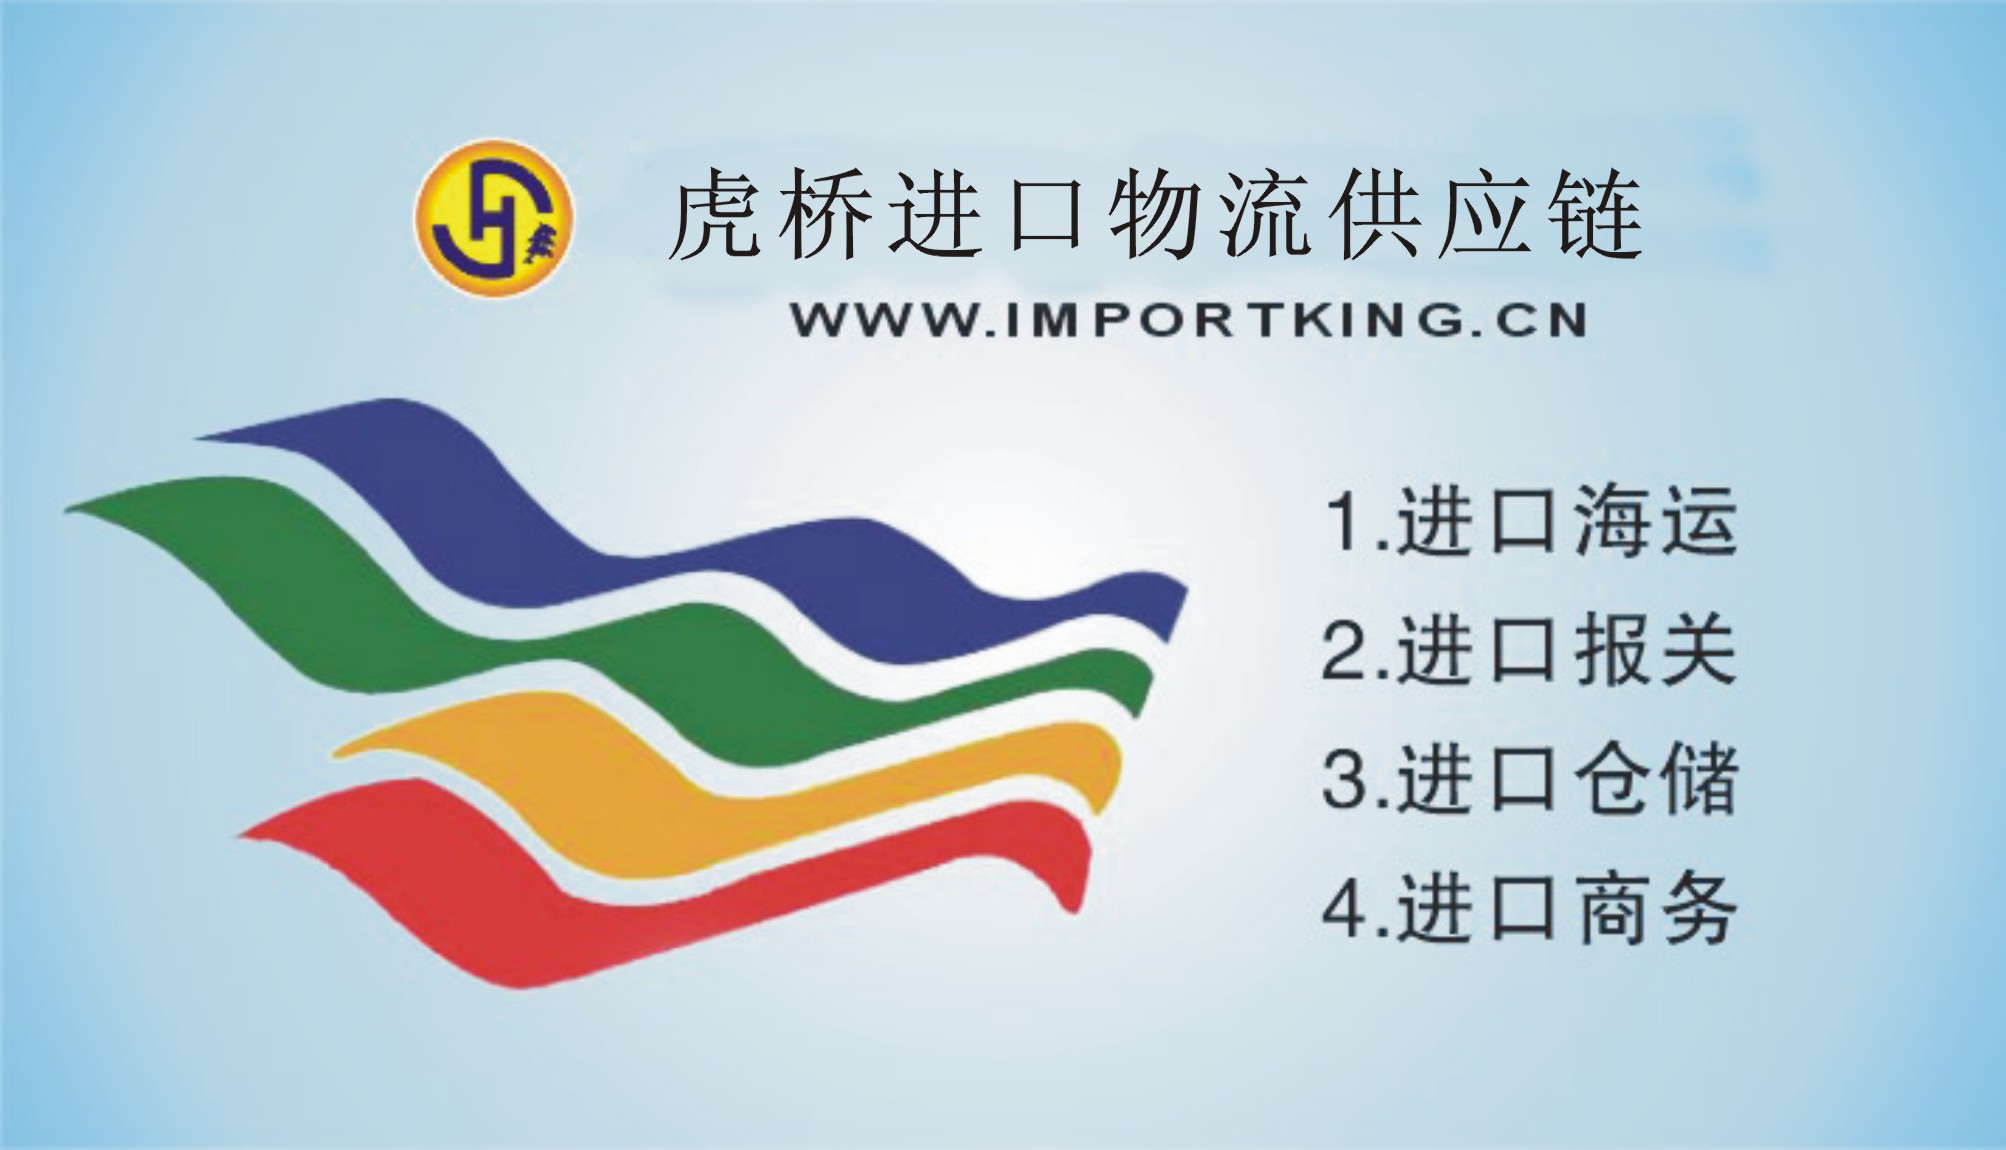 上海液氨进口有哪些流程/手续